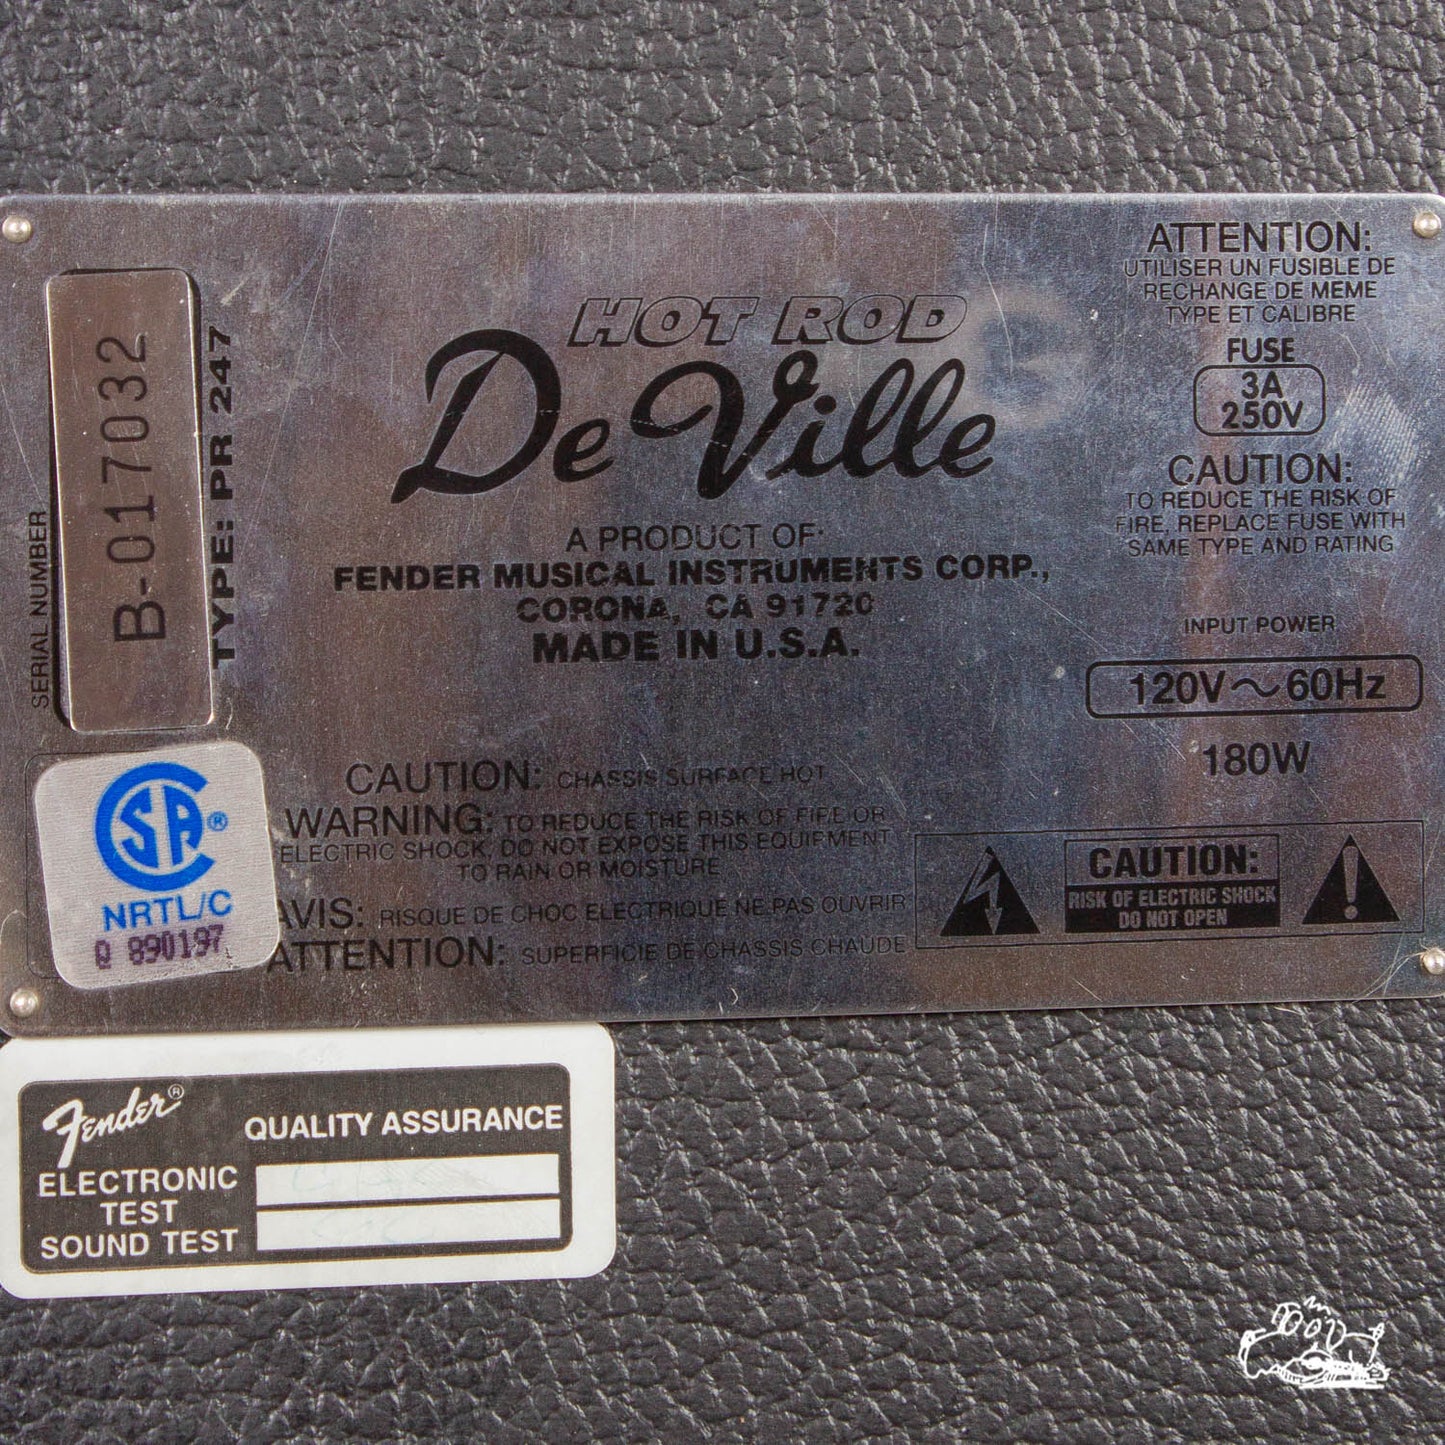 1996 Fender "Hot Rod" DeVille